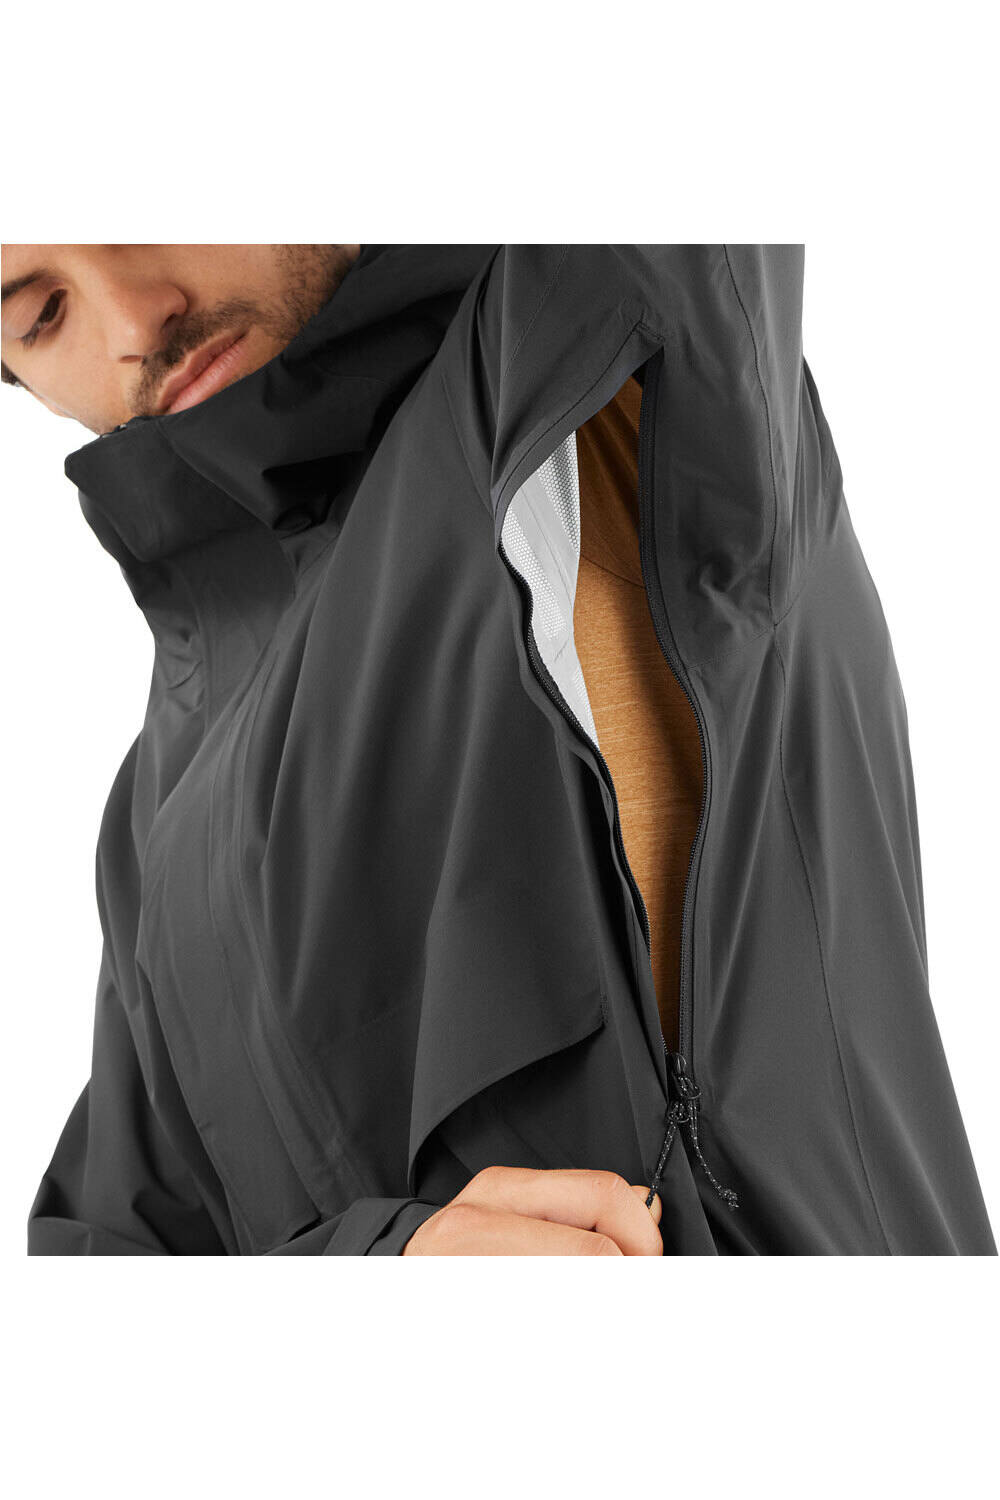 Salomon chaqueta impermeable hombre OUTERPATH JKT WP PRO M vista detalle